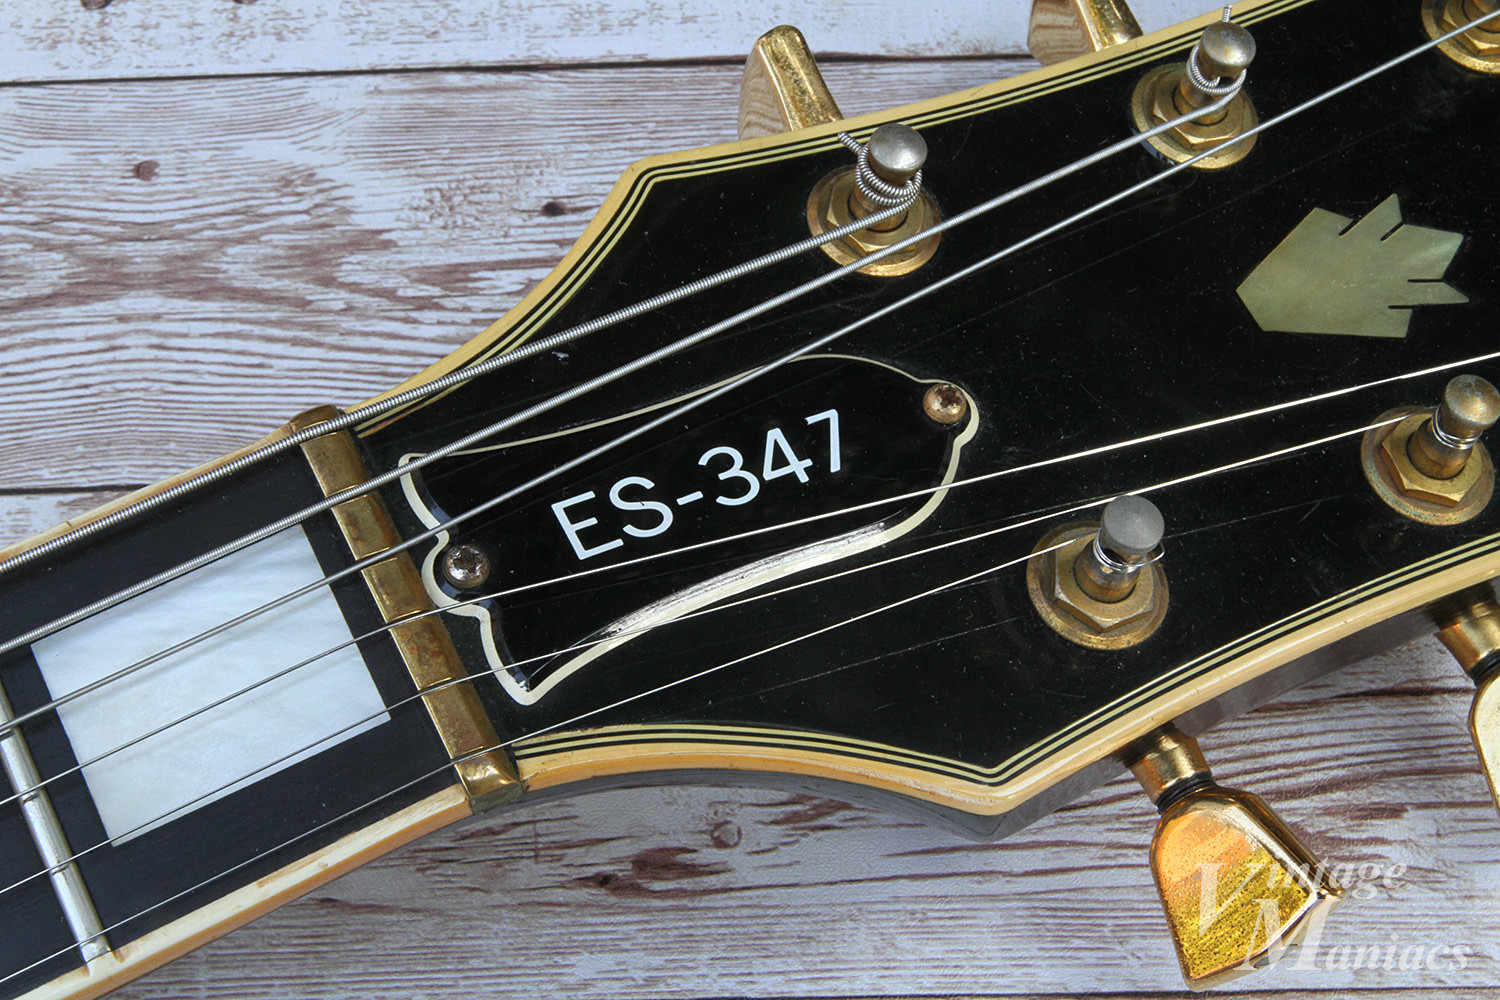 Gibson ES-347 - 「それなりの音楽の時代」に「それ程までしっかりと